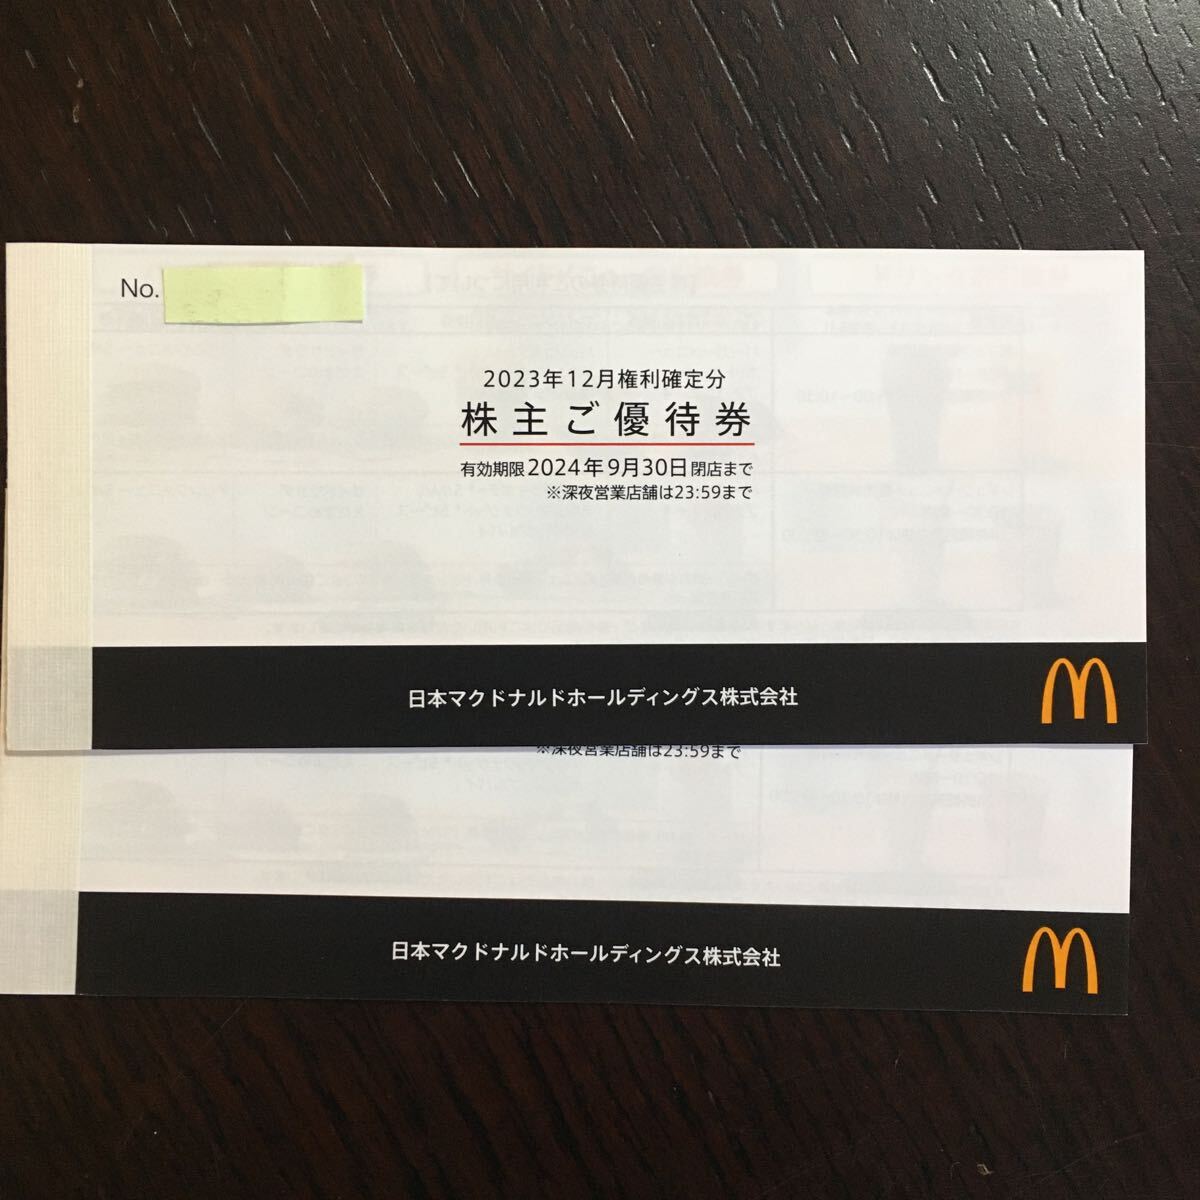 [Последнее] McDonald's Special 2 книги набор (12 написания) Обычная почта совместима с 84 иенными билетами, билет на боковой меню, билет на напиток Mac Double Mac